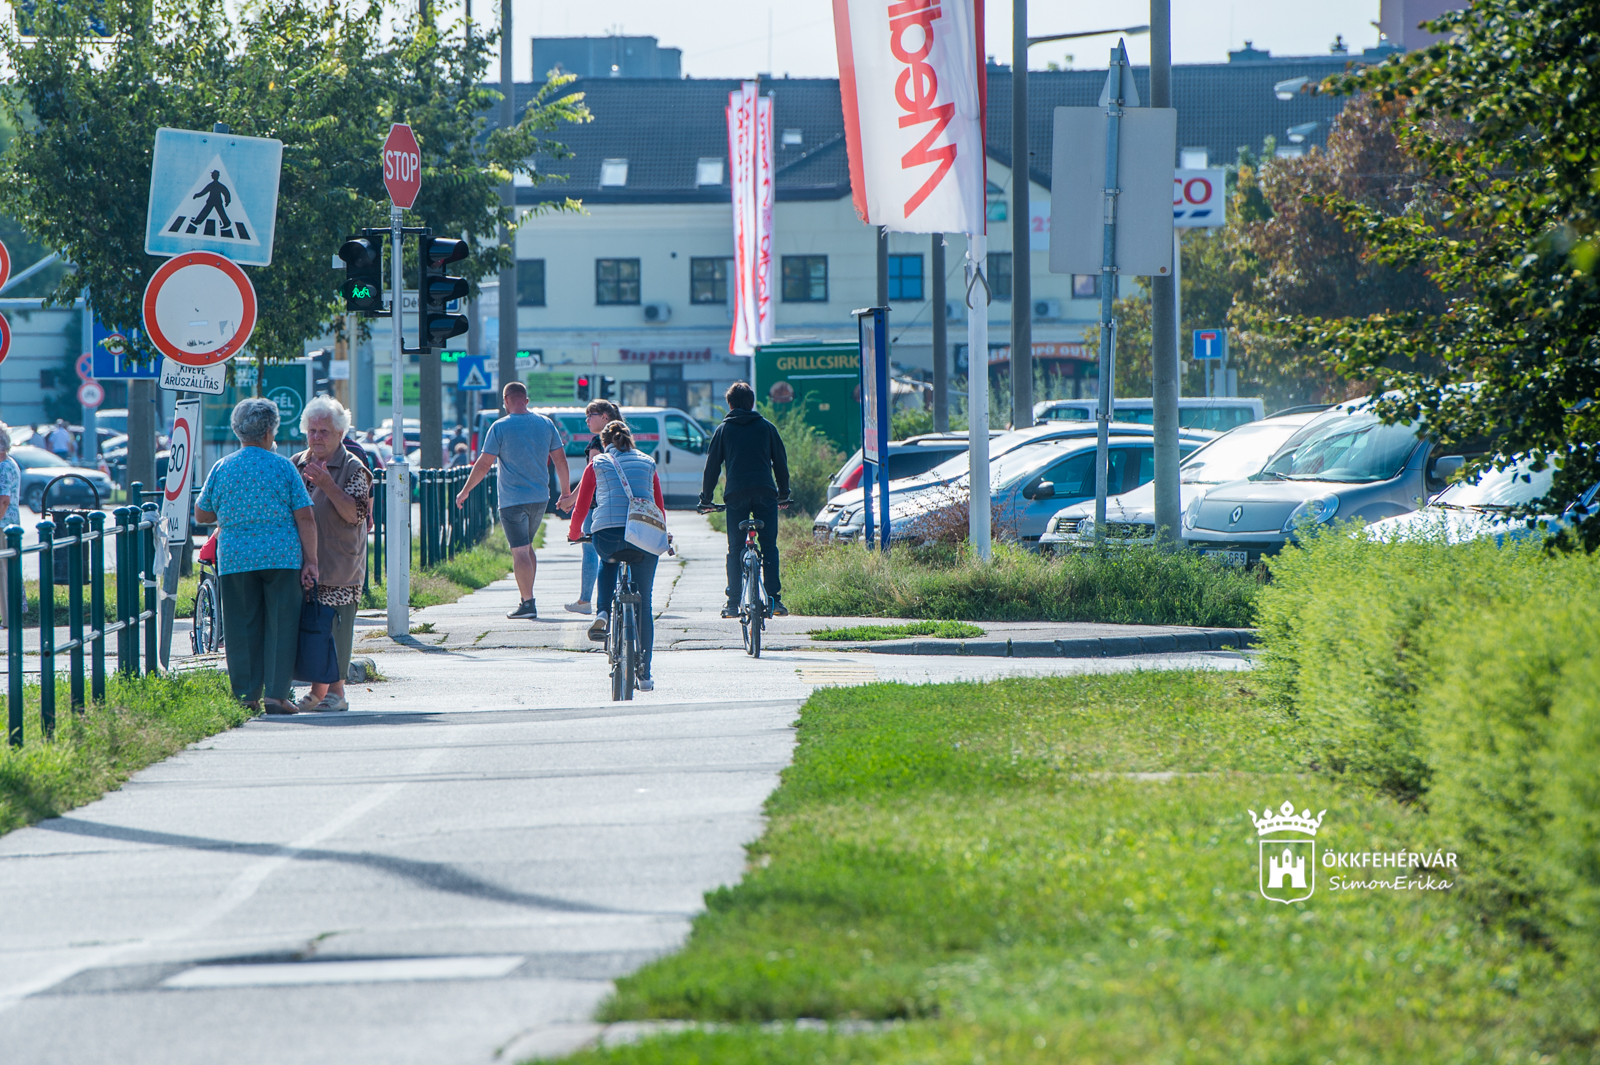 Átépítik a Palotai úti kerékpárutat - 18 km bicikliút épül a Belváros környékén